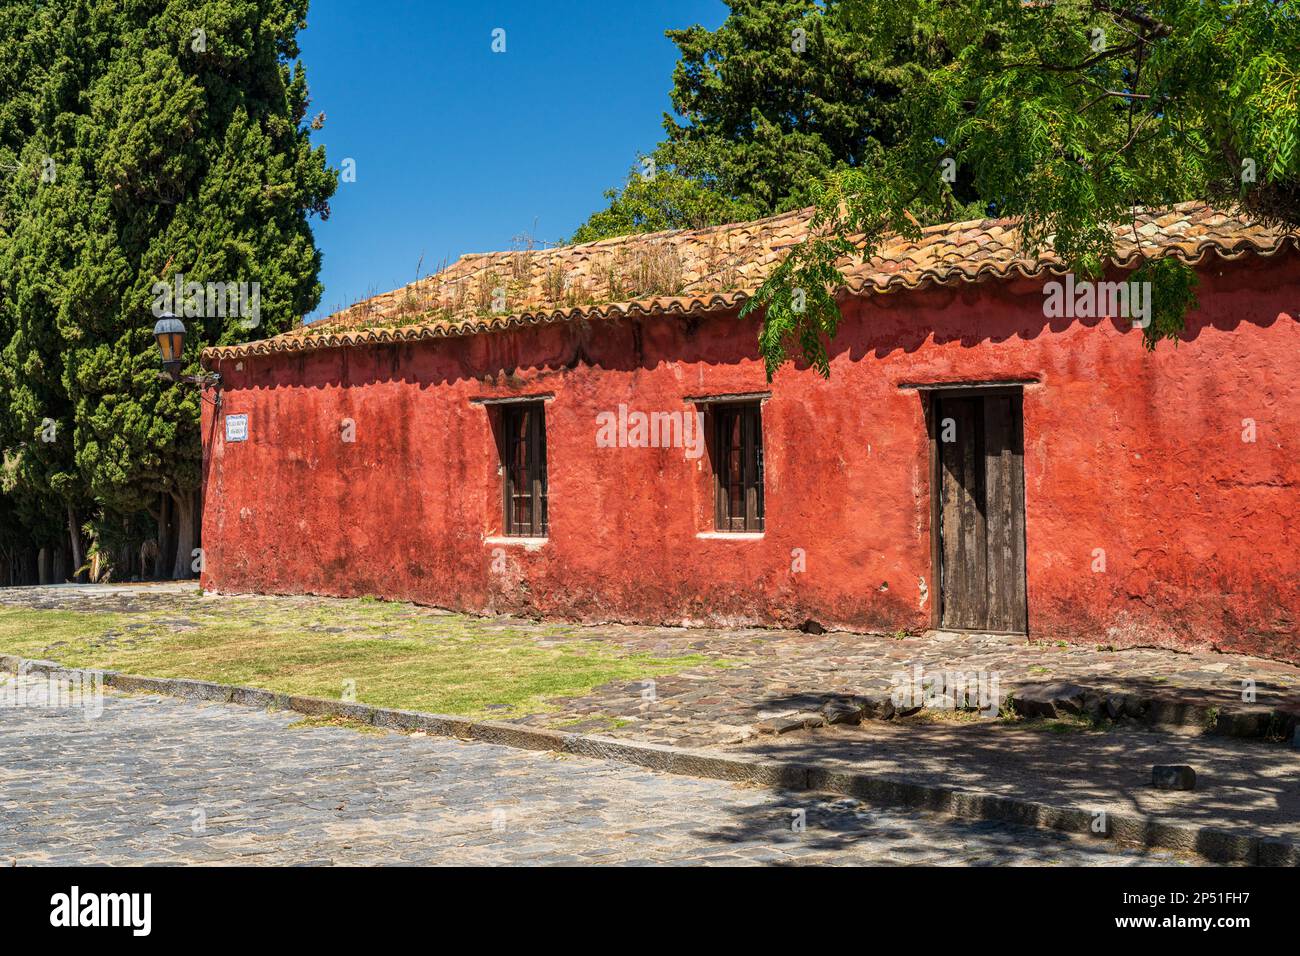 Ancienne maison en pierre peinte en rouge à Colonia del Sacramento Uruguay Banque D'Images